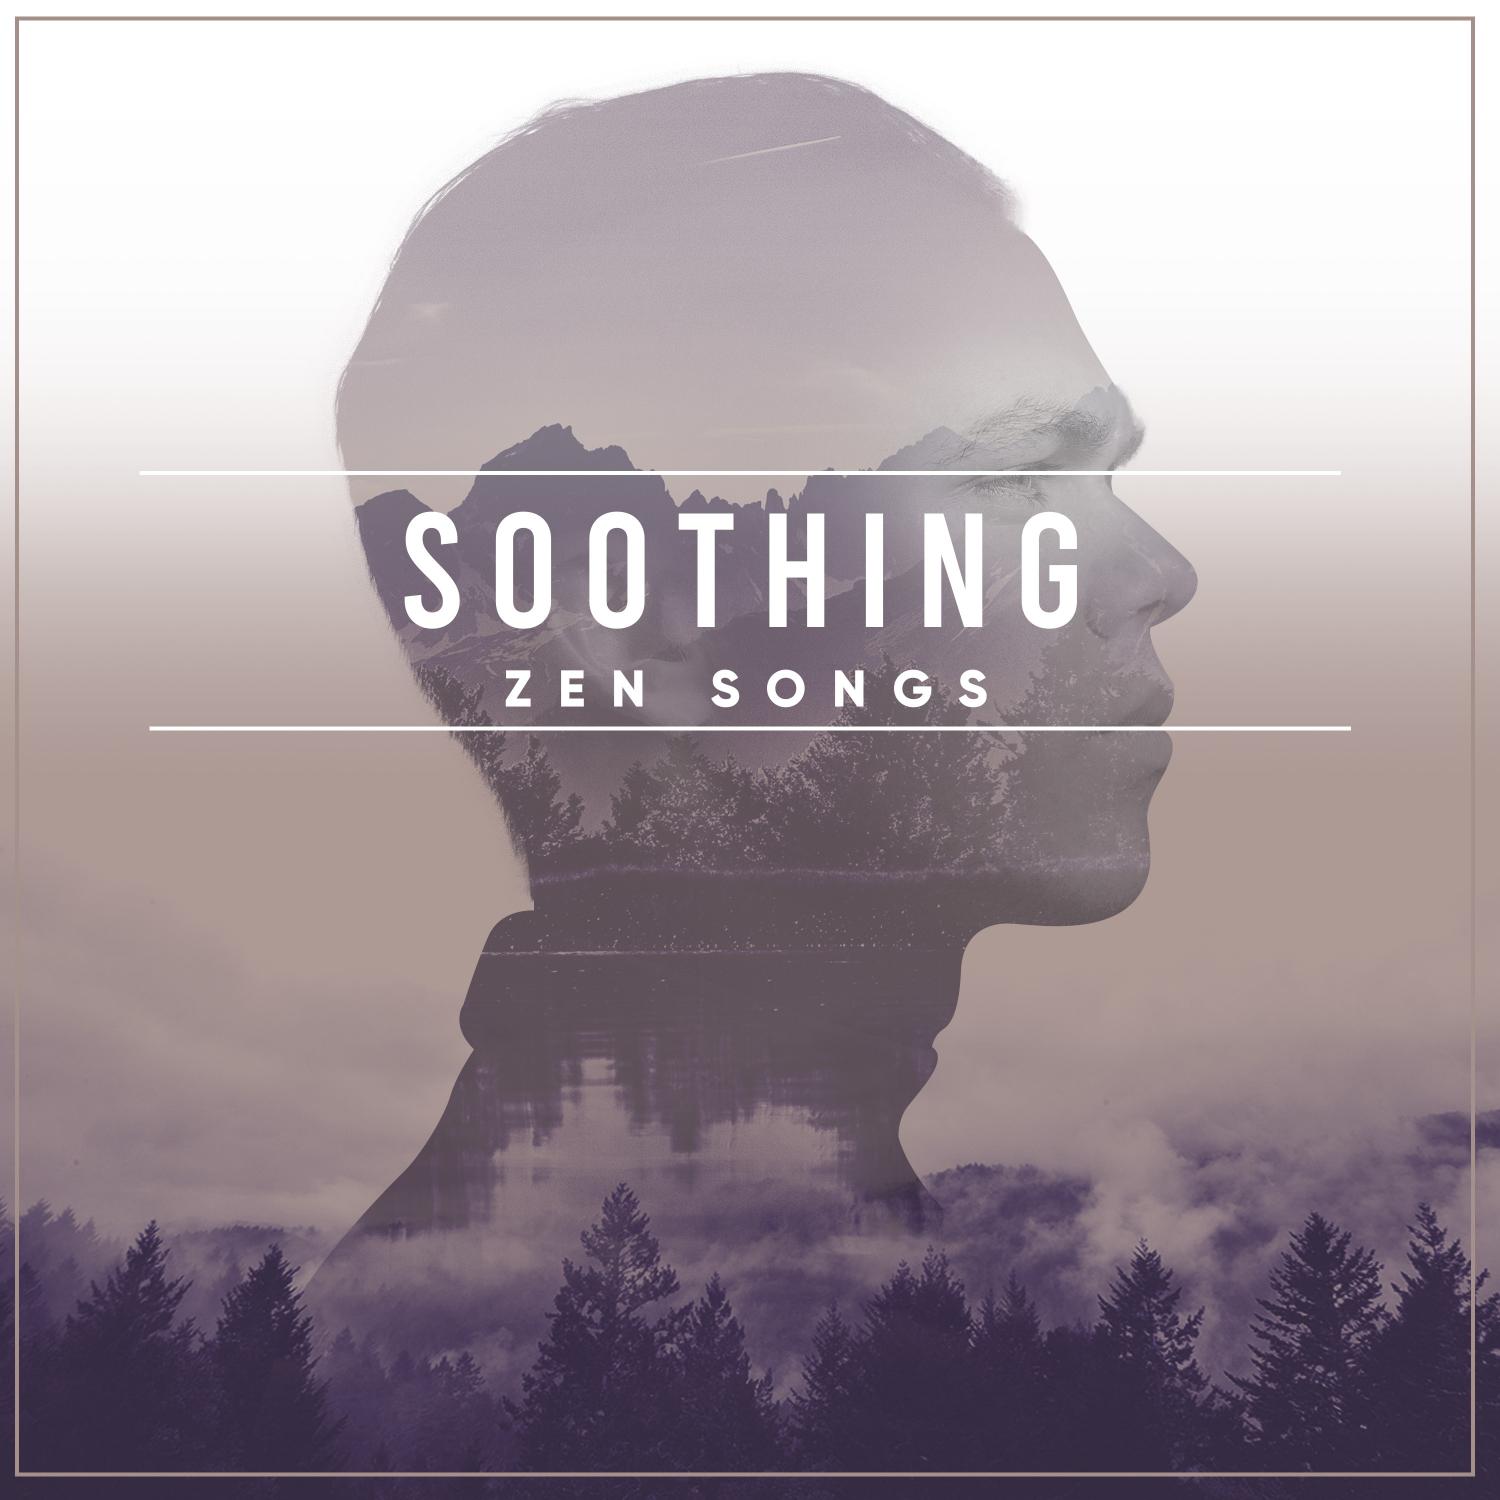 19 Soothing Zen Songs for Inner Peace